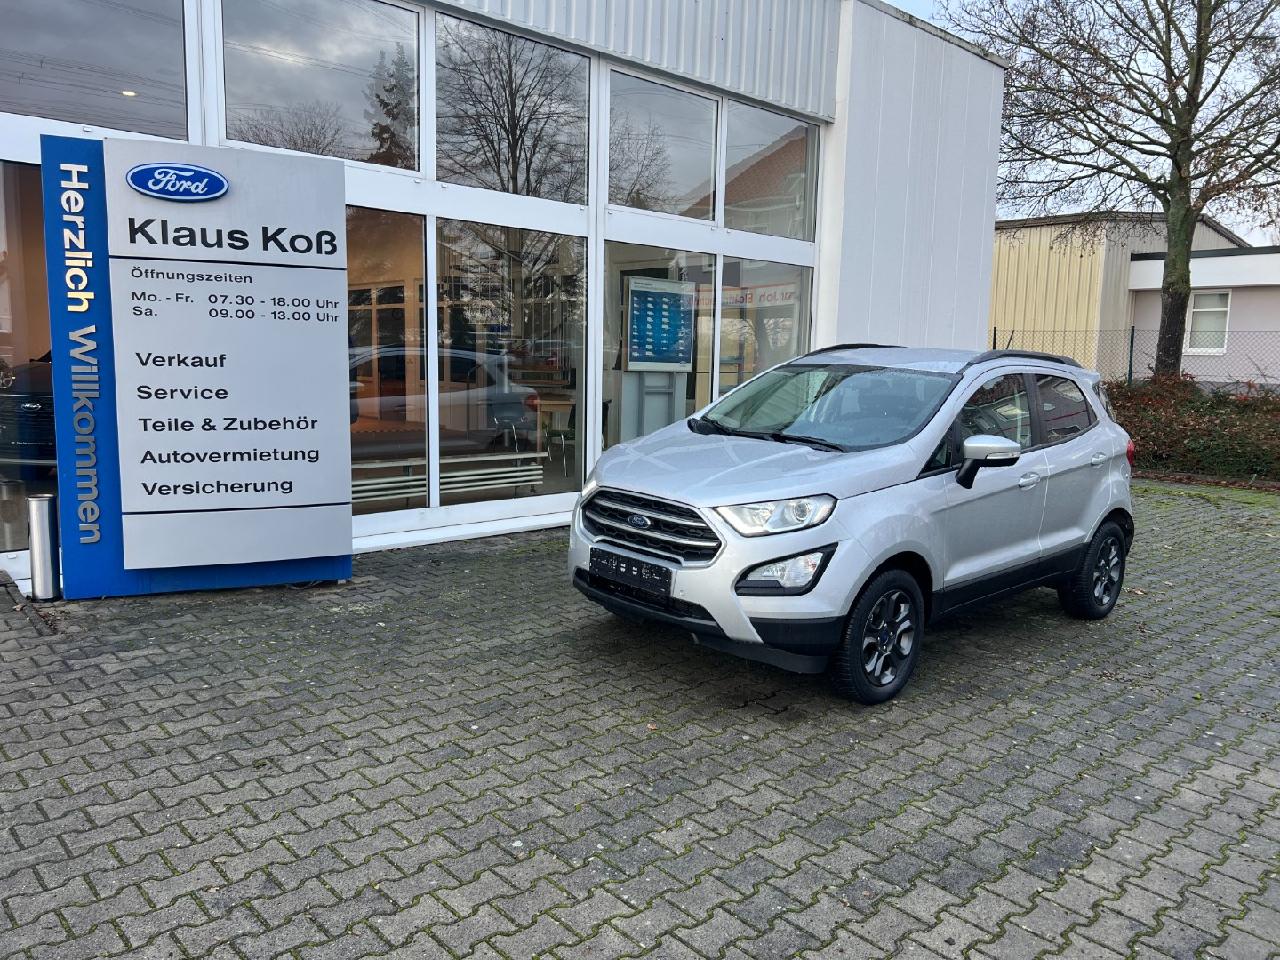 Ford Kfz- & Auto-Zubehör  Autohaus Klaus Koß GmbH Oschersleben